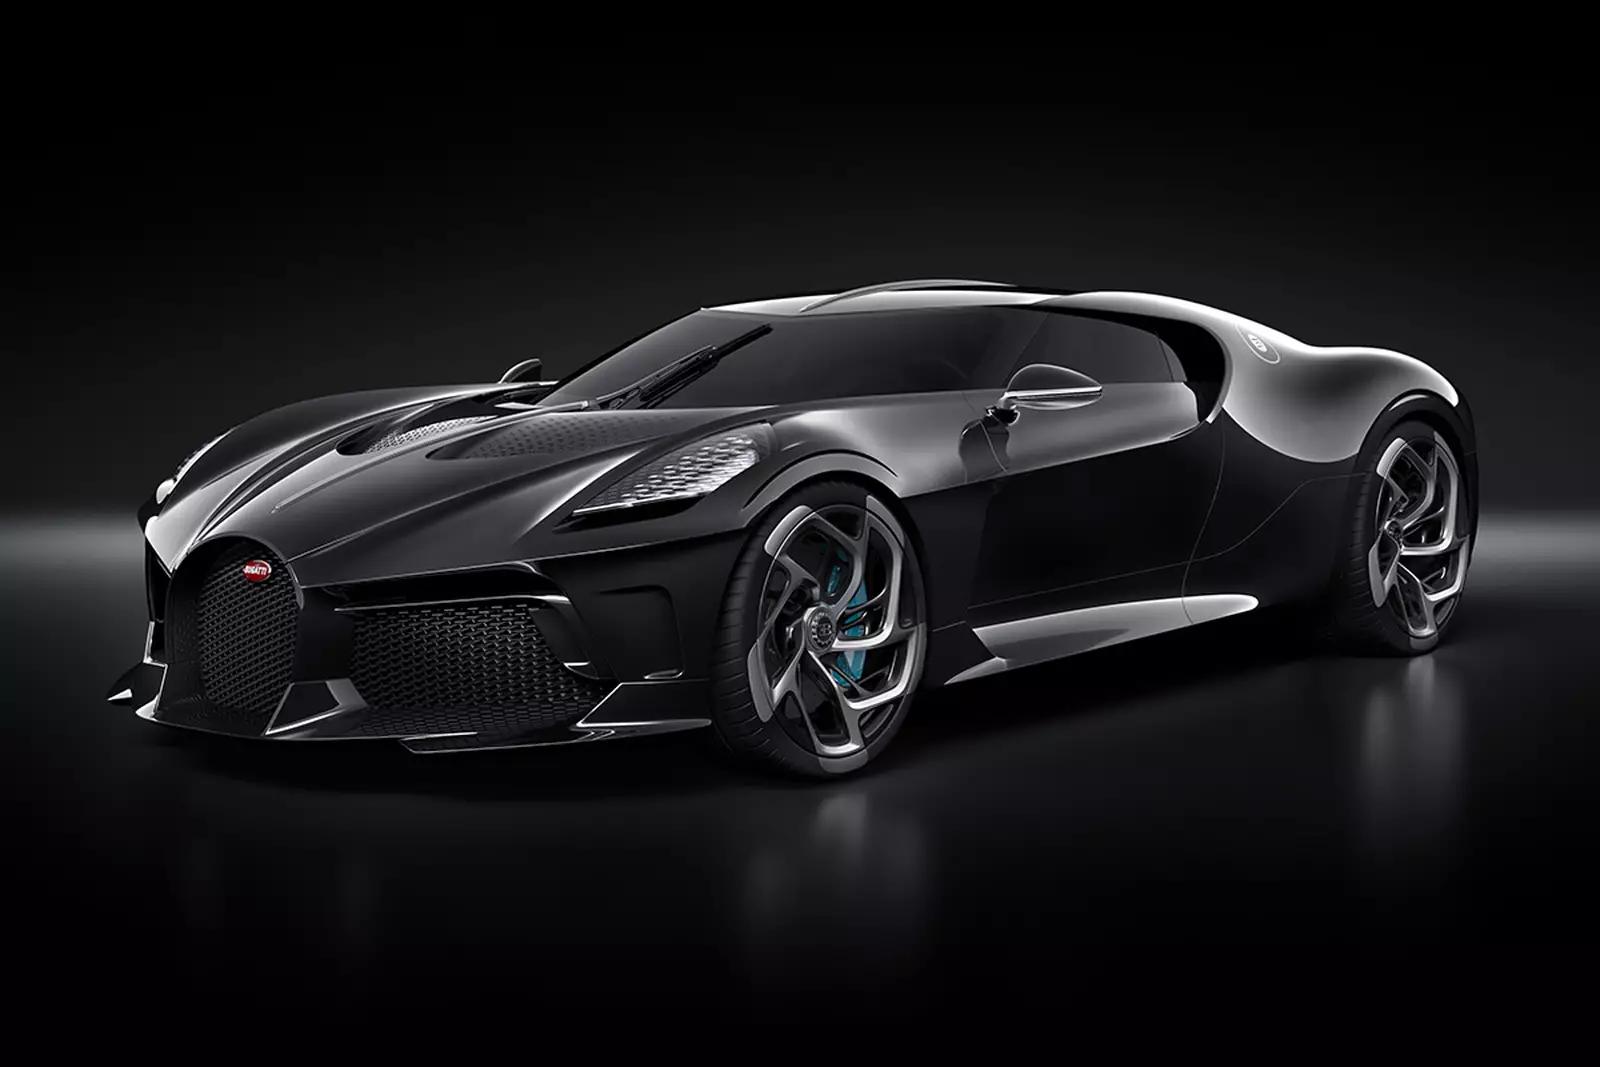 Bugatti luxury car